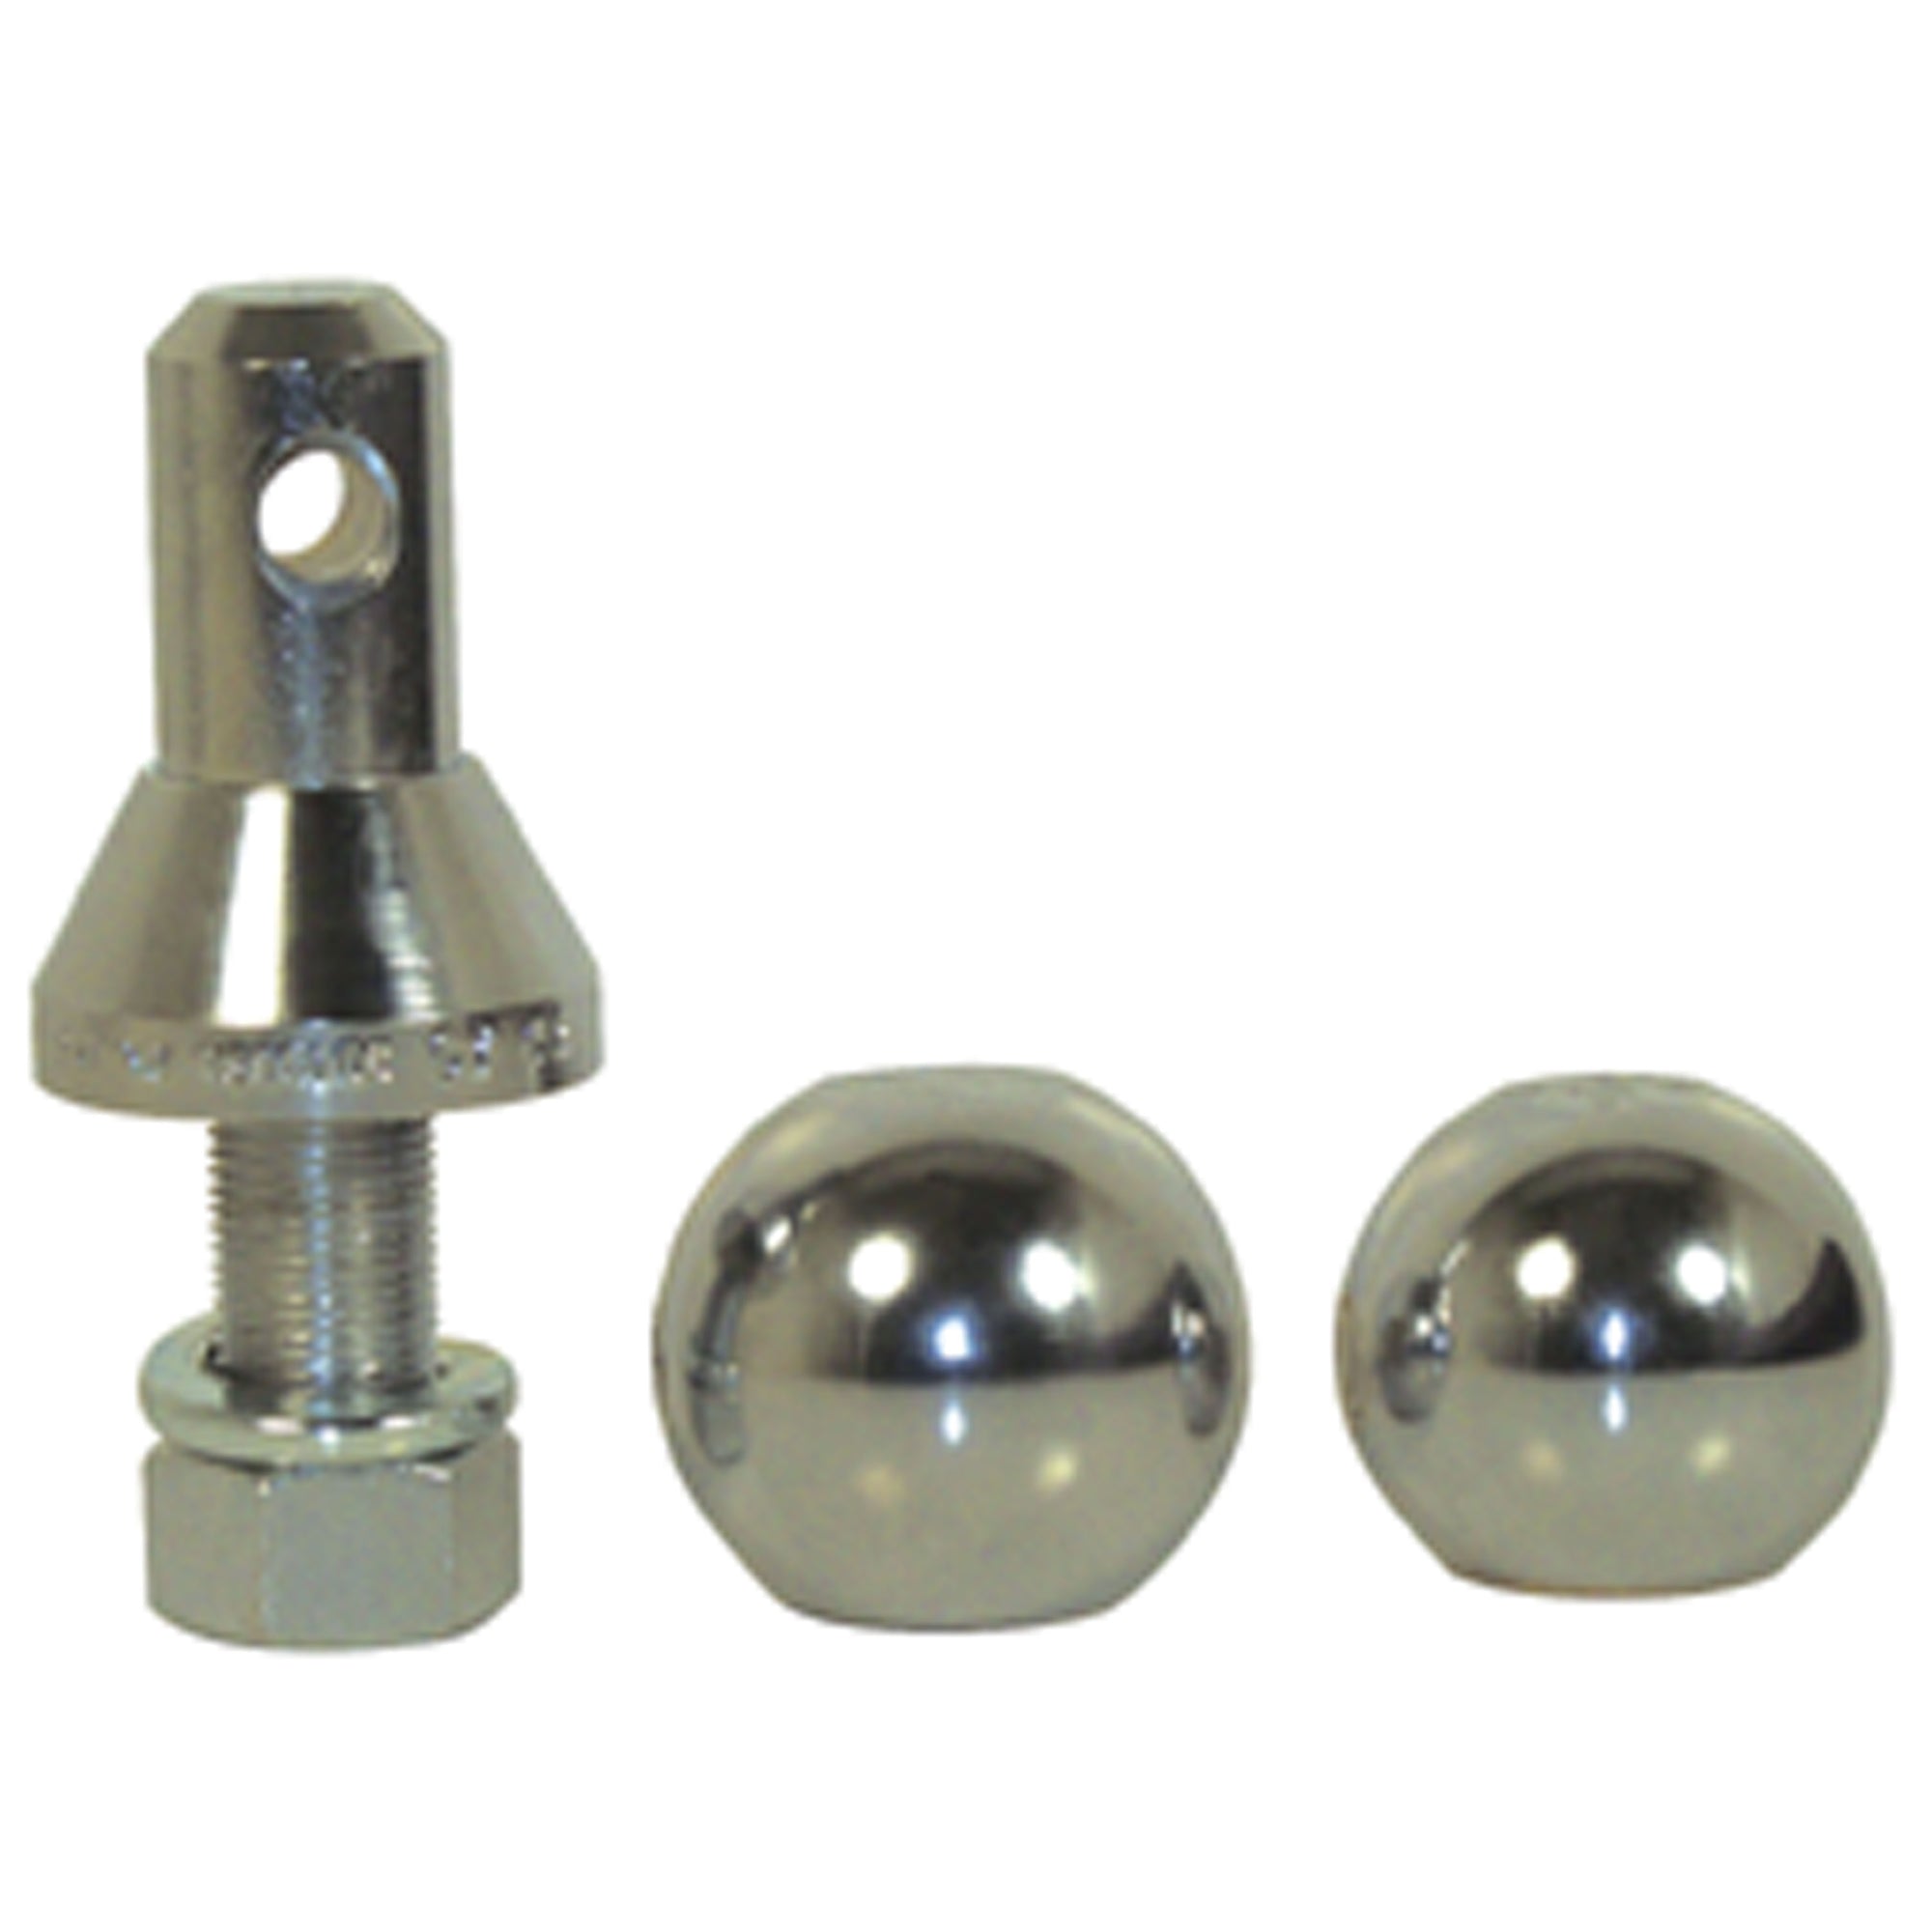 Convert-A-Ball 105LB Interchangeable Nickel-Plated Ball Set - 1-7/8" and 2" Balls, 1" XL Shank